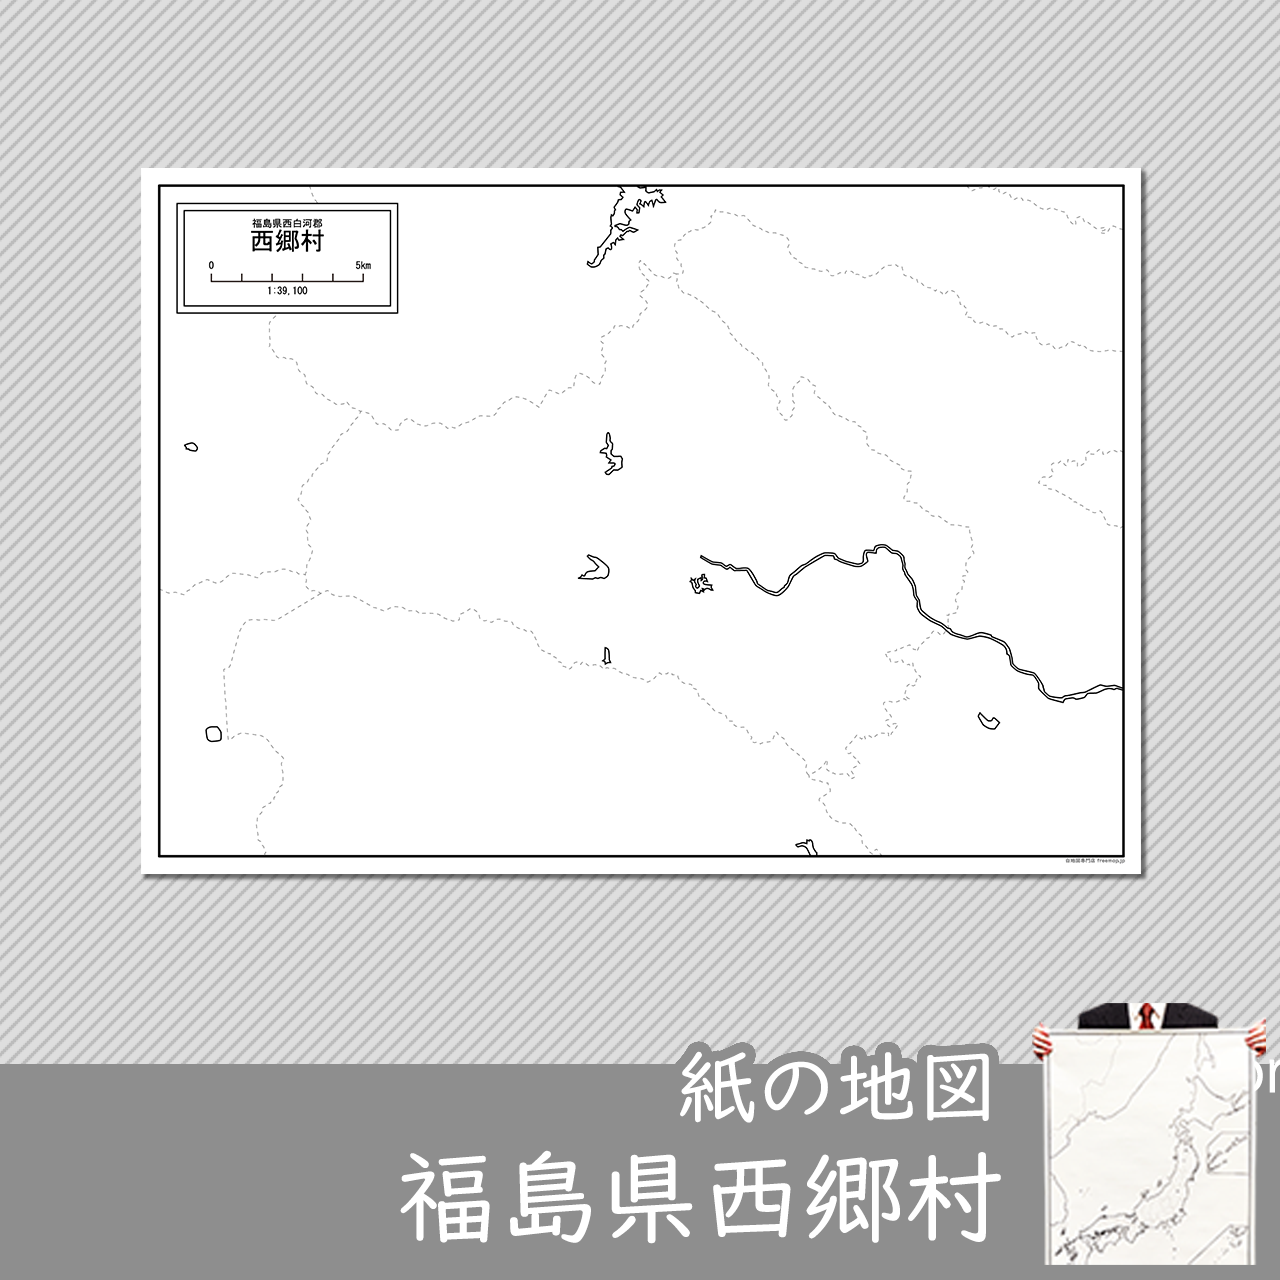 西郷村の紙の白地図のサムネイル